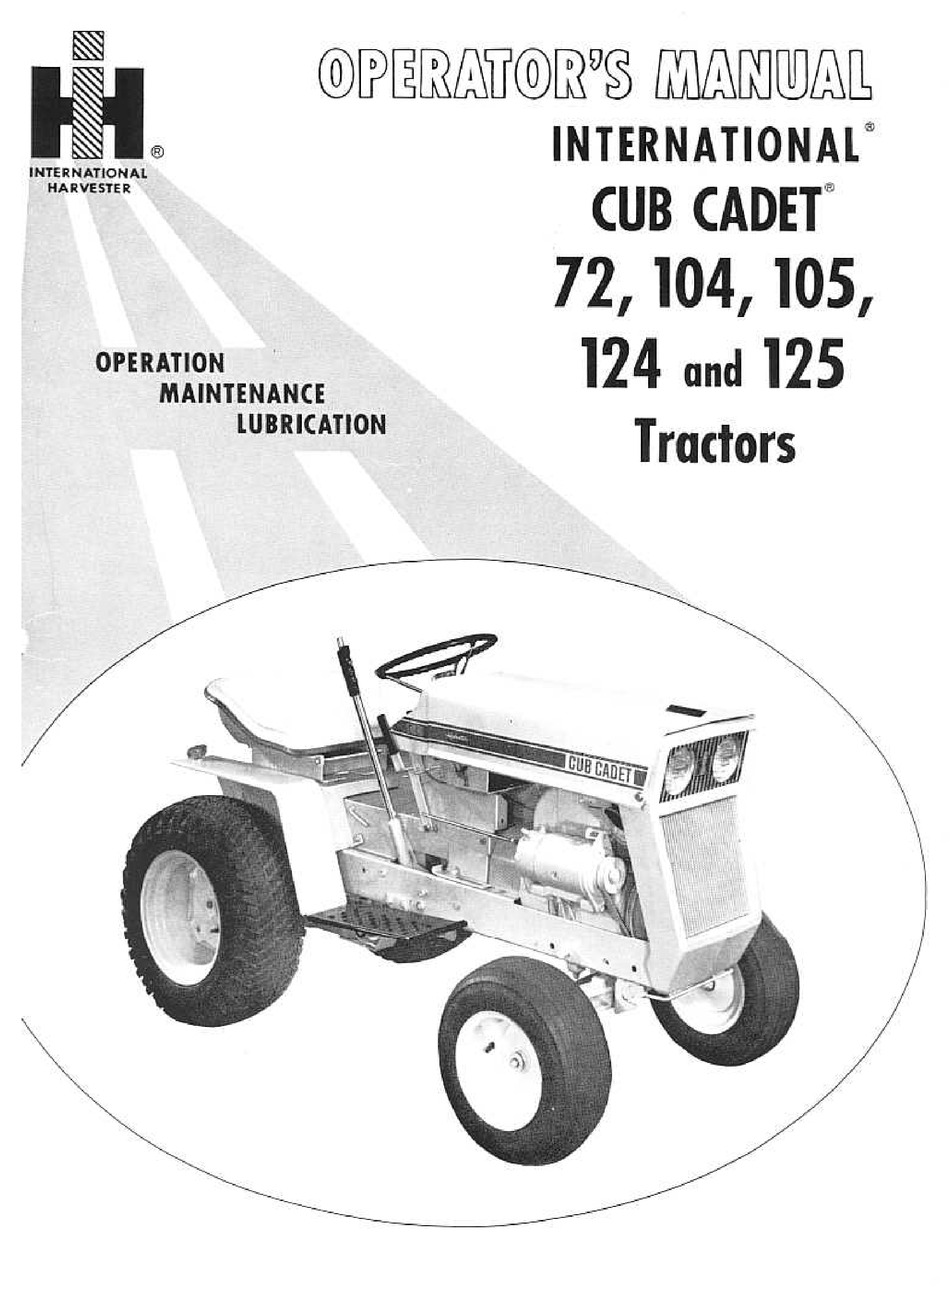 Прицеп для Cub Cadet. Cub Cadet 125 Parts. International Harvester Cub. Lawn tractor. Инструкция int